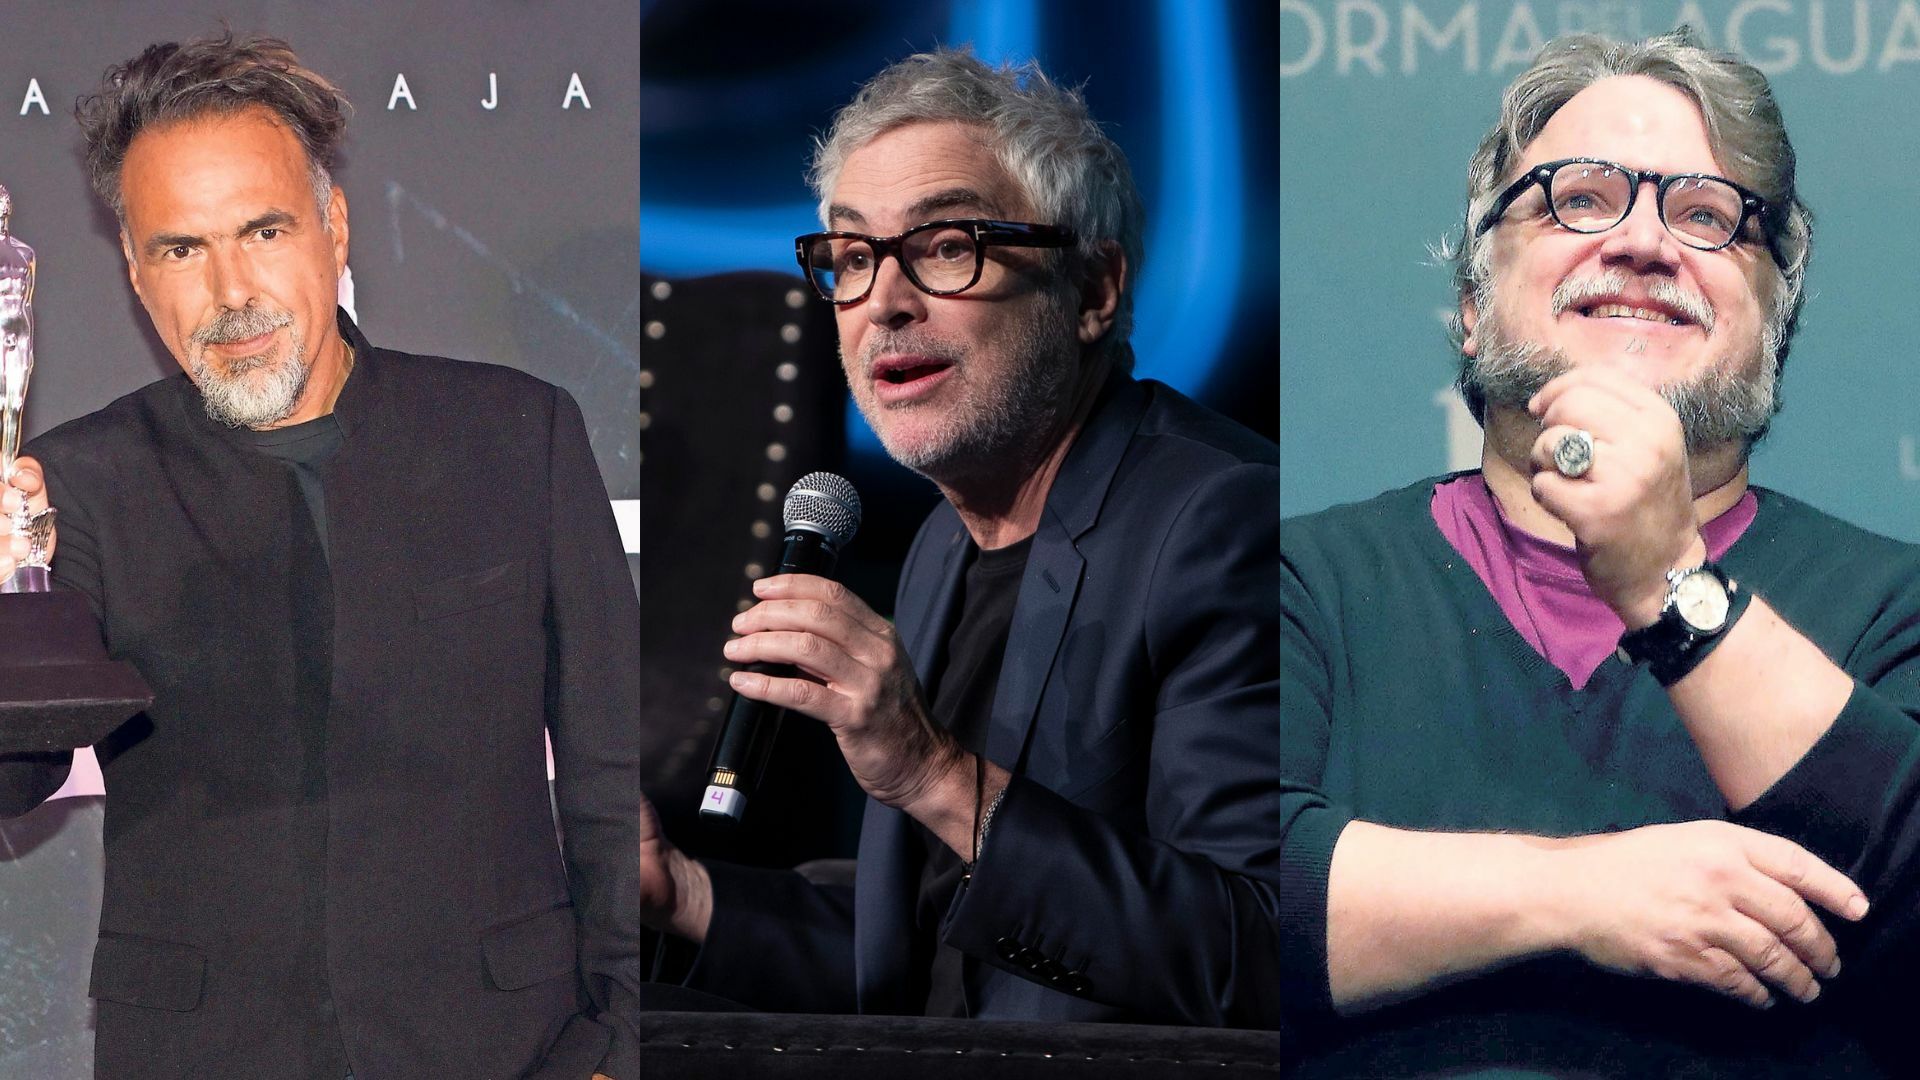 ¿Cuáles son los próximos proyectos de Alejandro González Iñárritu, Alfonso Cuarón y Guillermo del Toro?